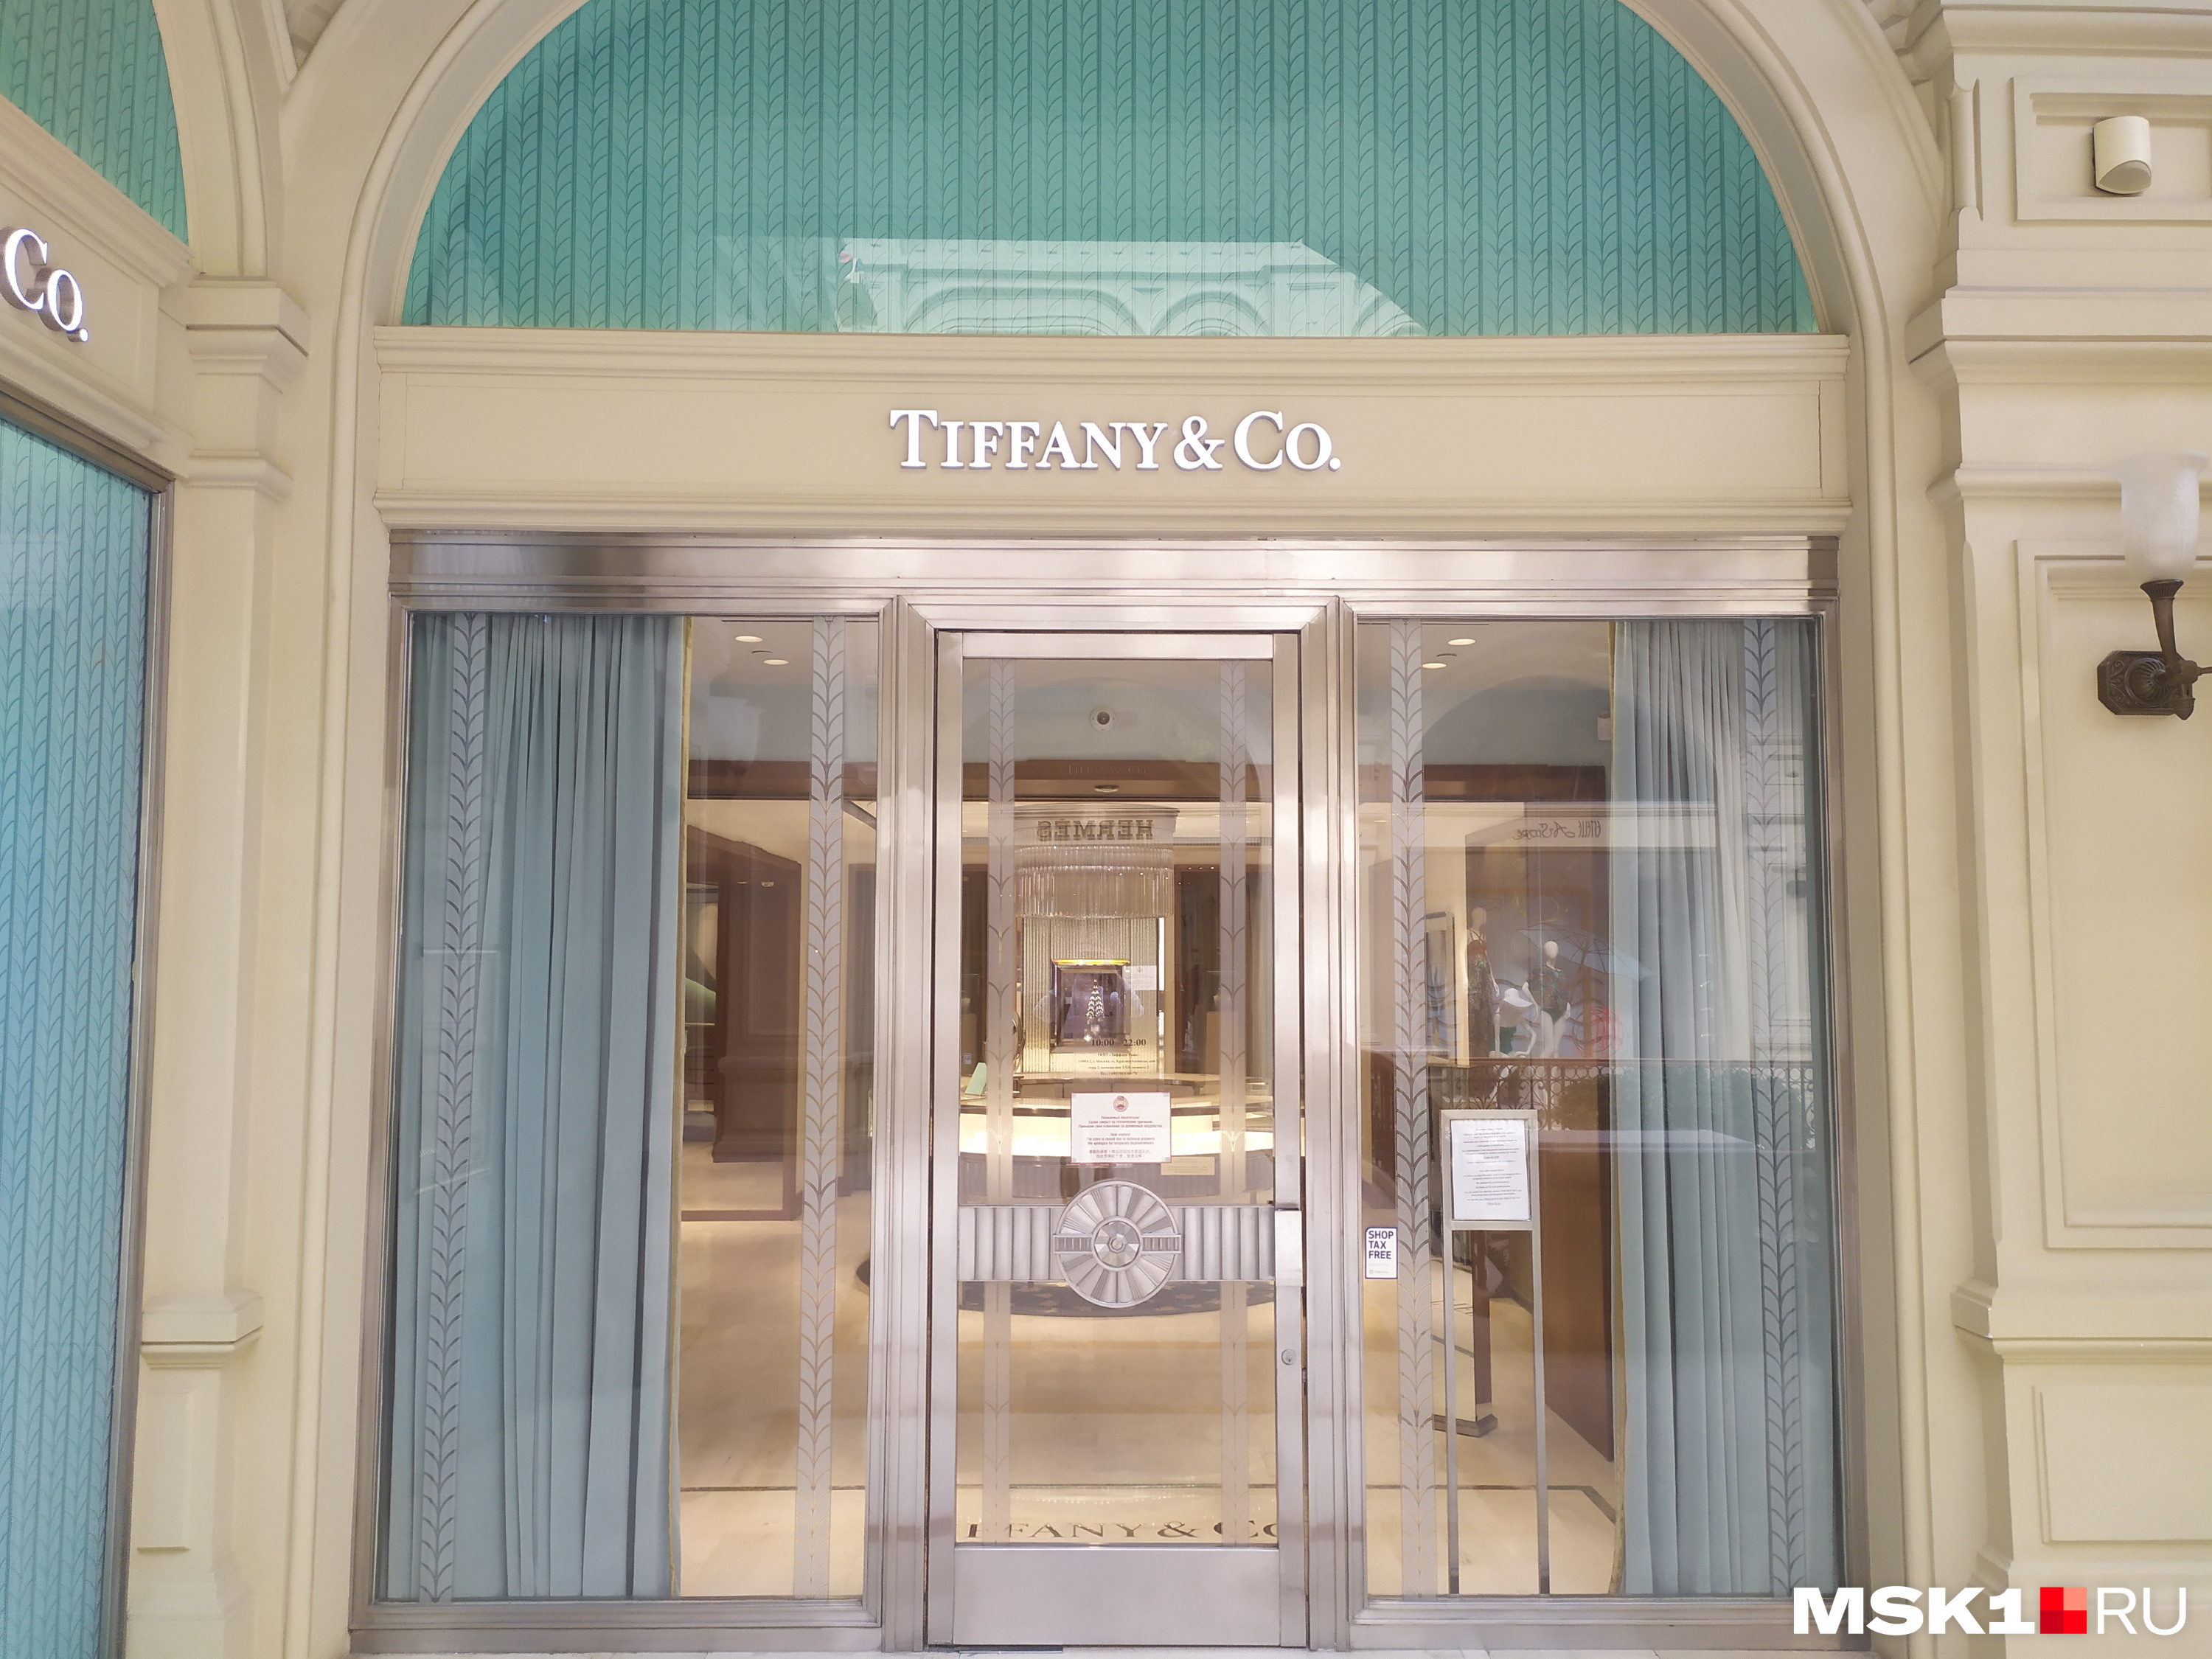 Сосед Hermes — Tiffany & Co — также закрыт